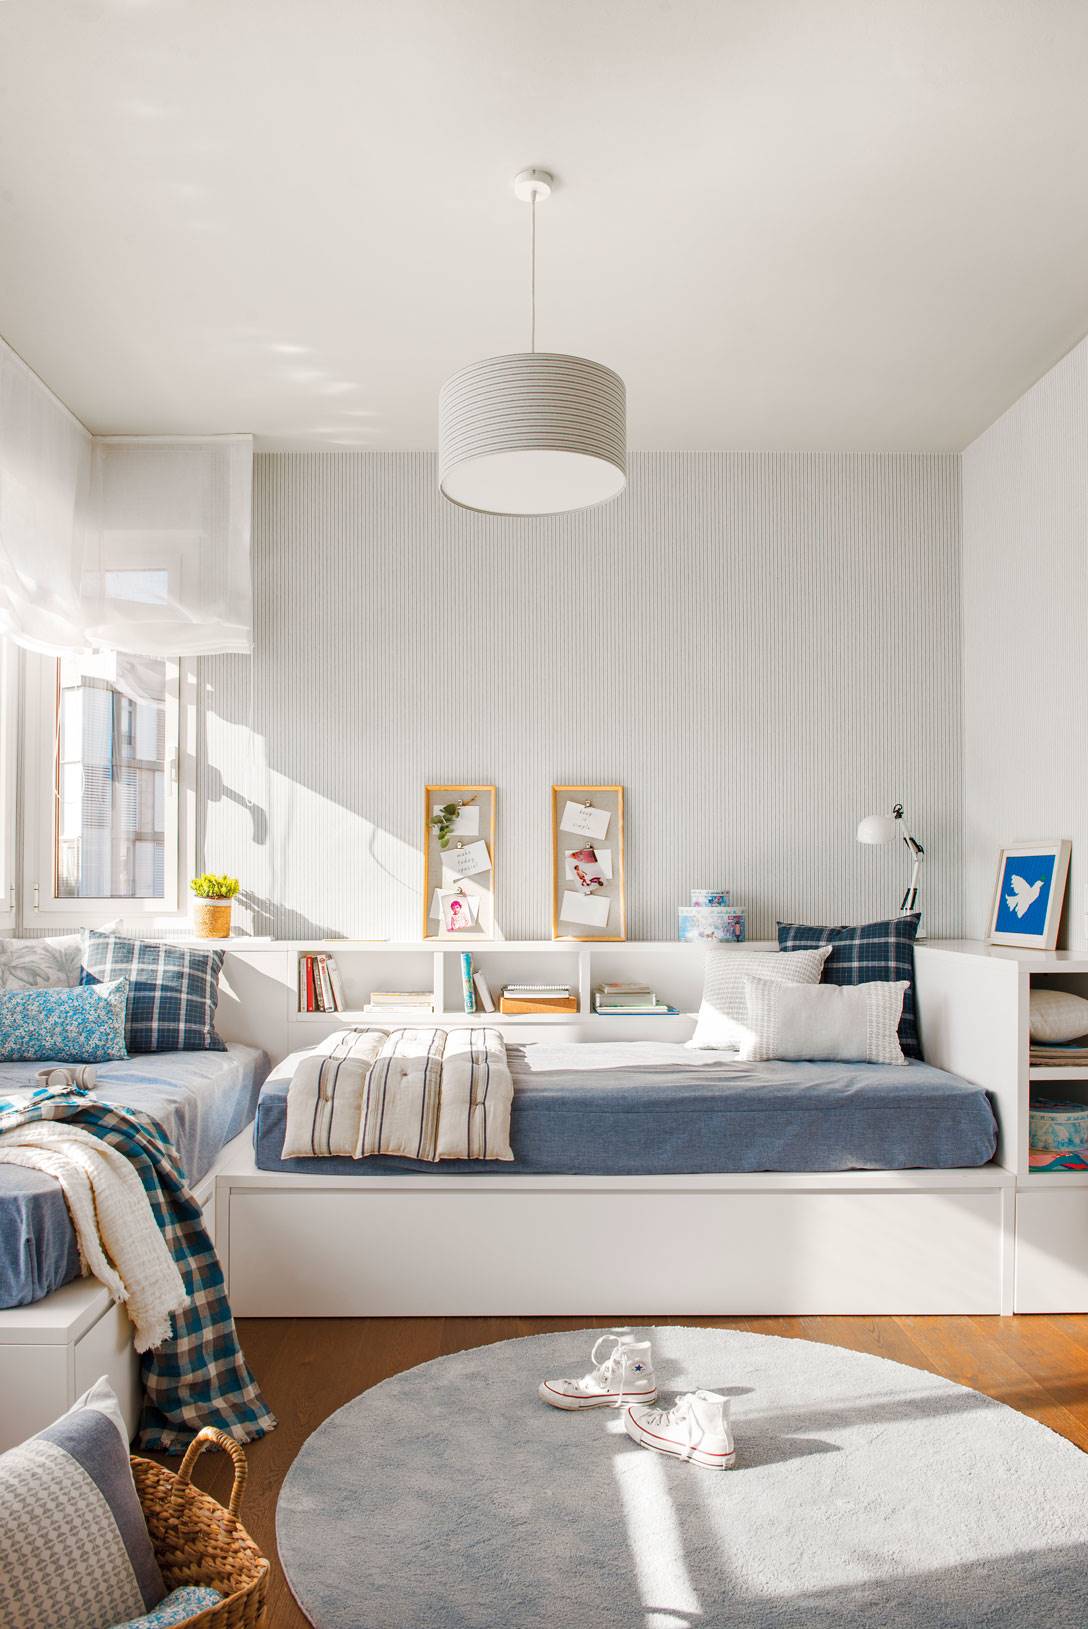 Dormitorio juvenil en blanco y azul con mueble a medida con espacio de almacenaje. 